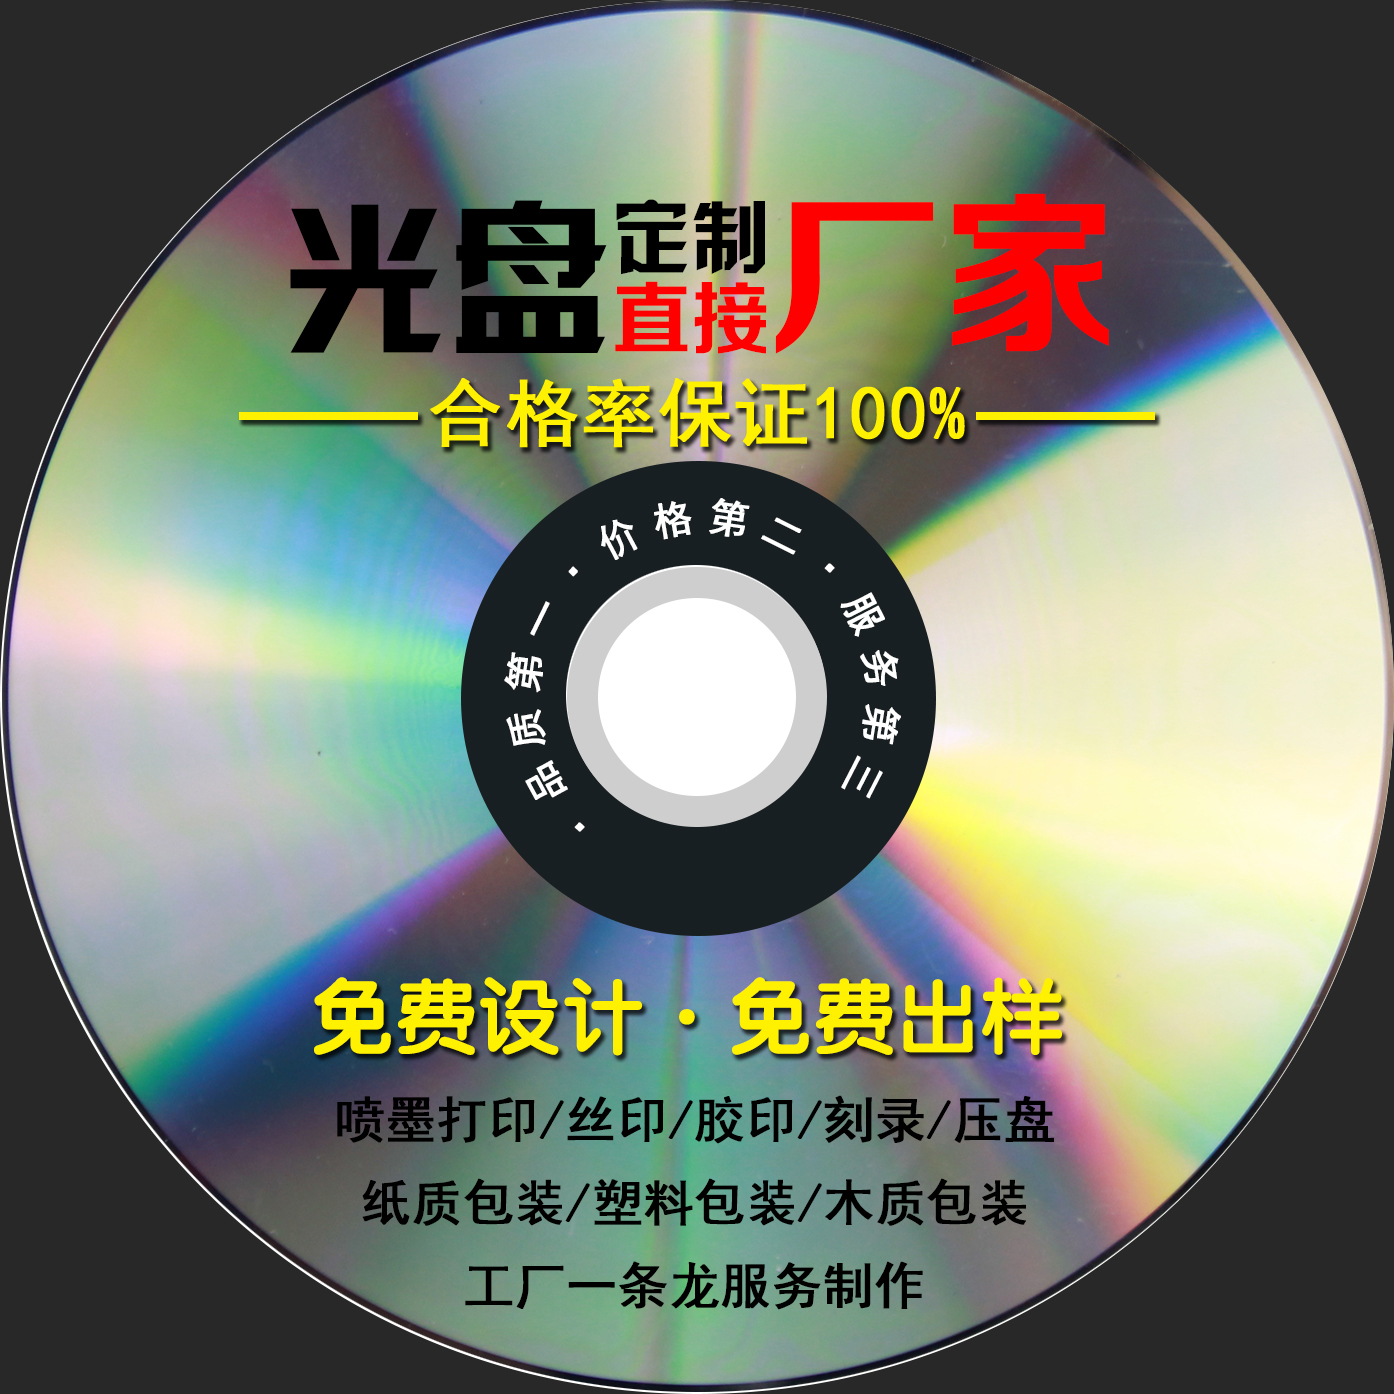 光盘制作定制CD/DVD封面打印丝印胶印刻录印刷压盘包装一条龙服务